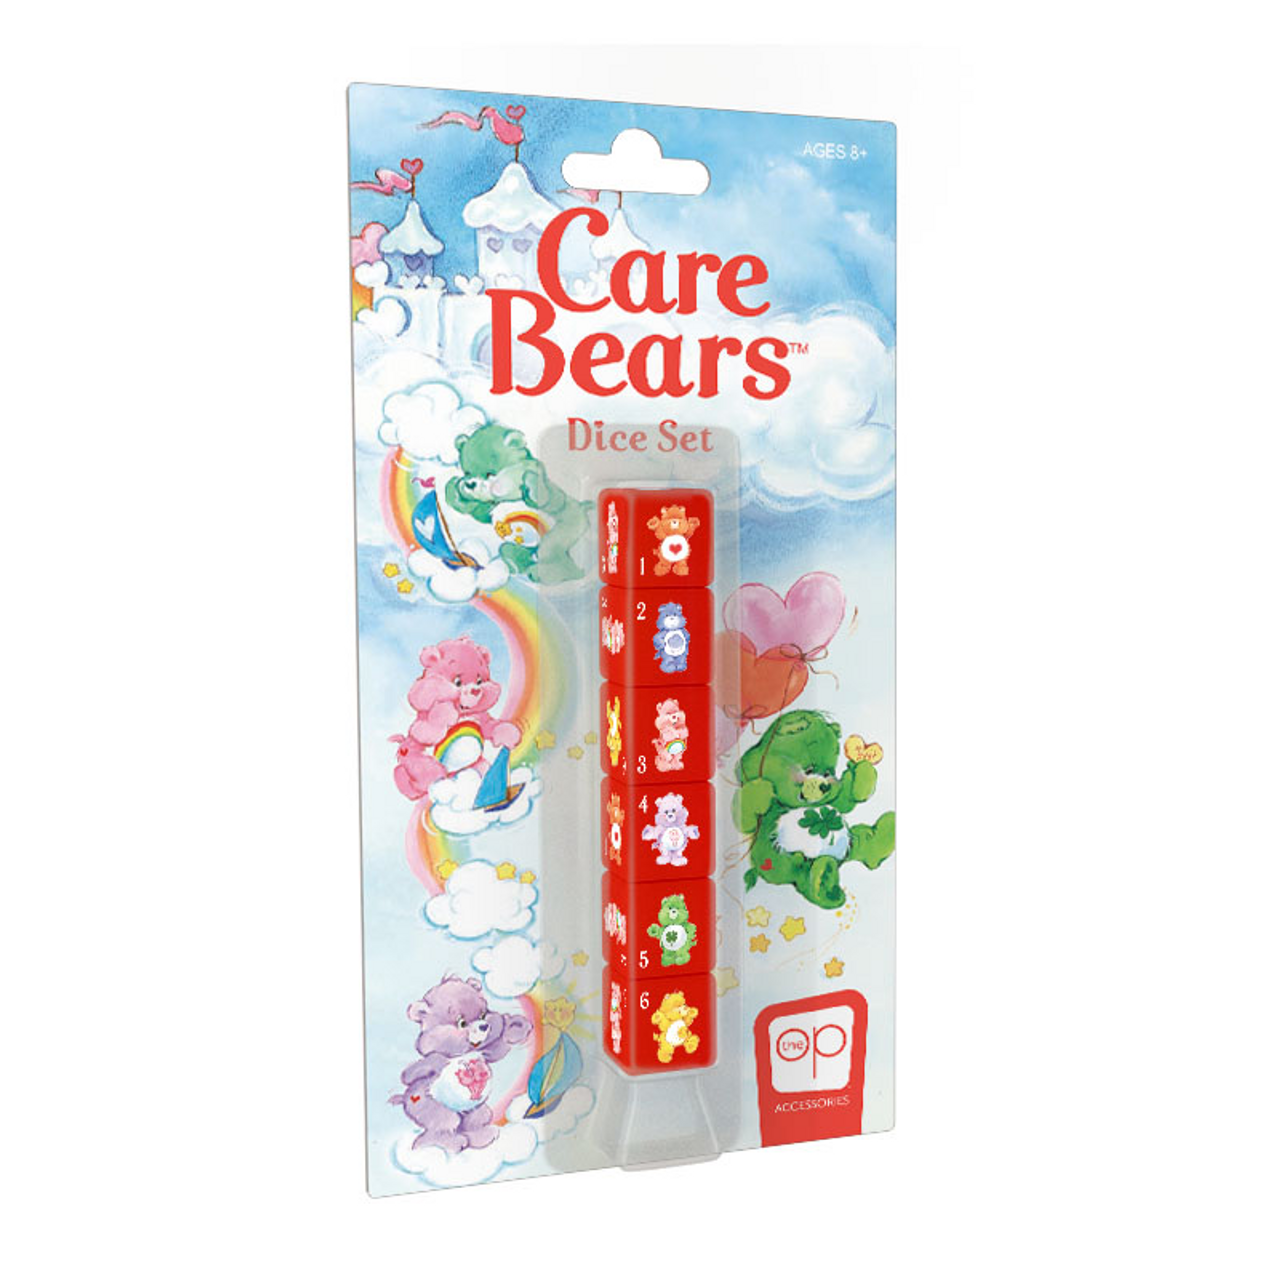 Care Bears Dice Set